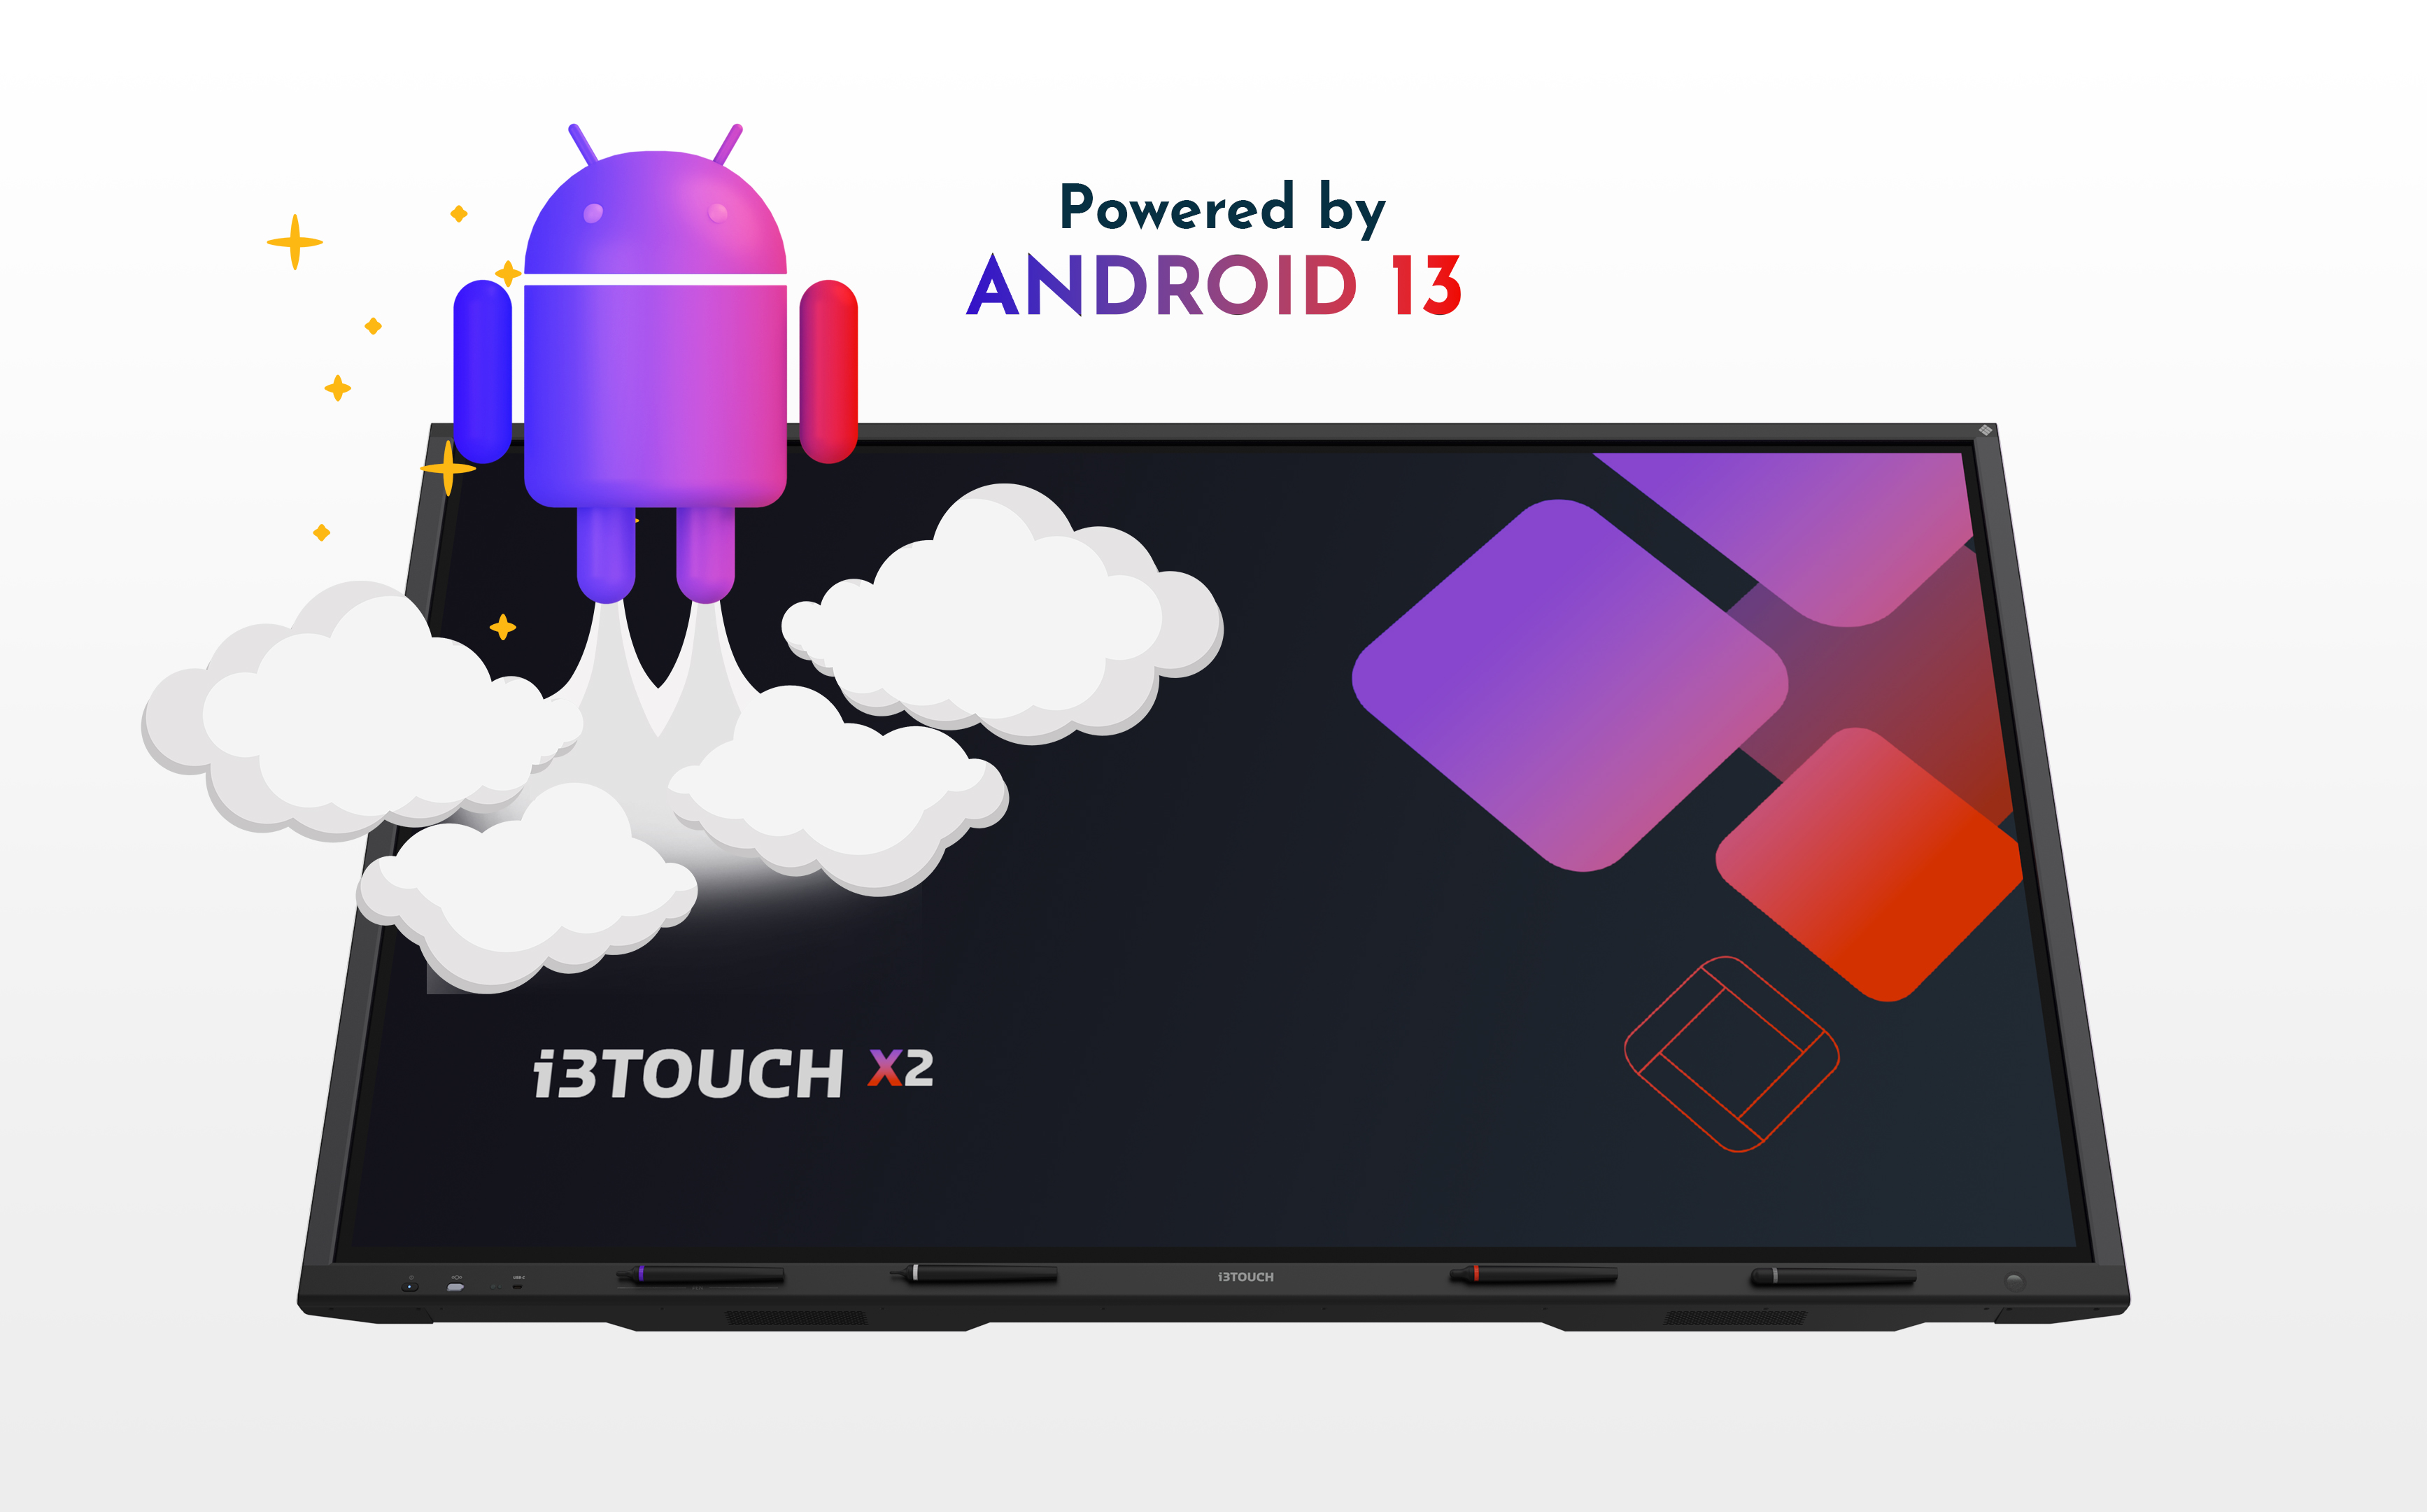 Het i3TOUCH X2 scherm maakt gebruik van het Android 13 besturingssysteem